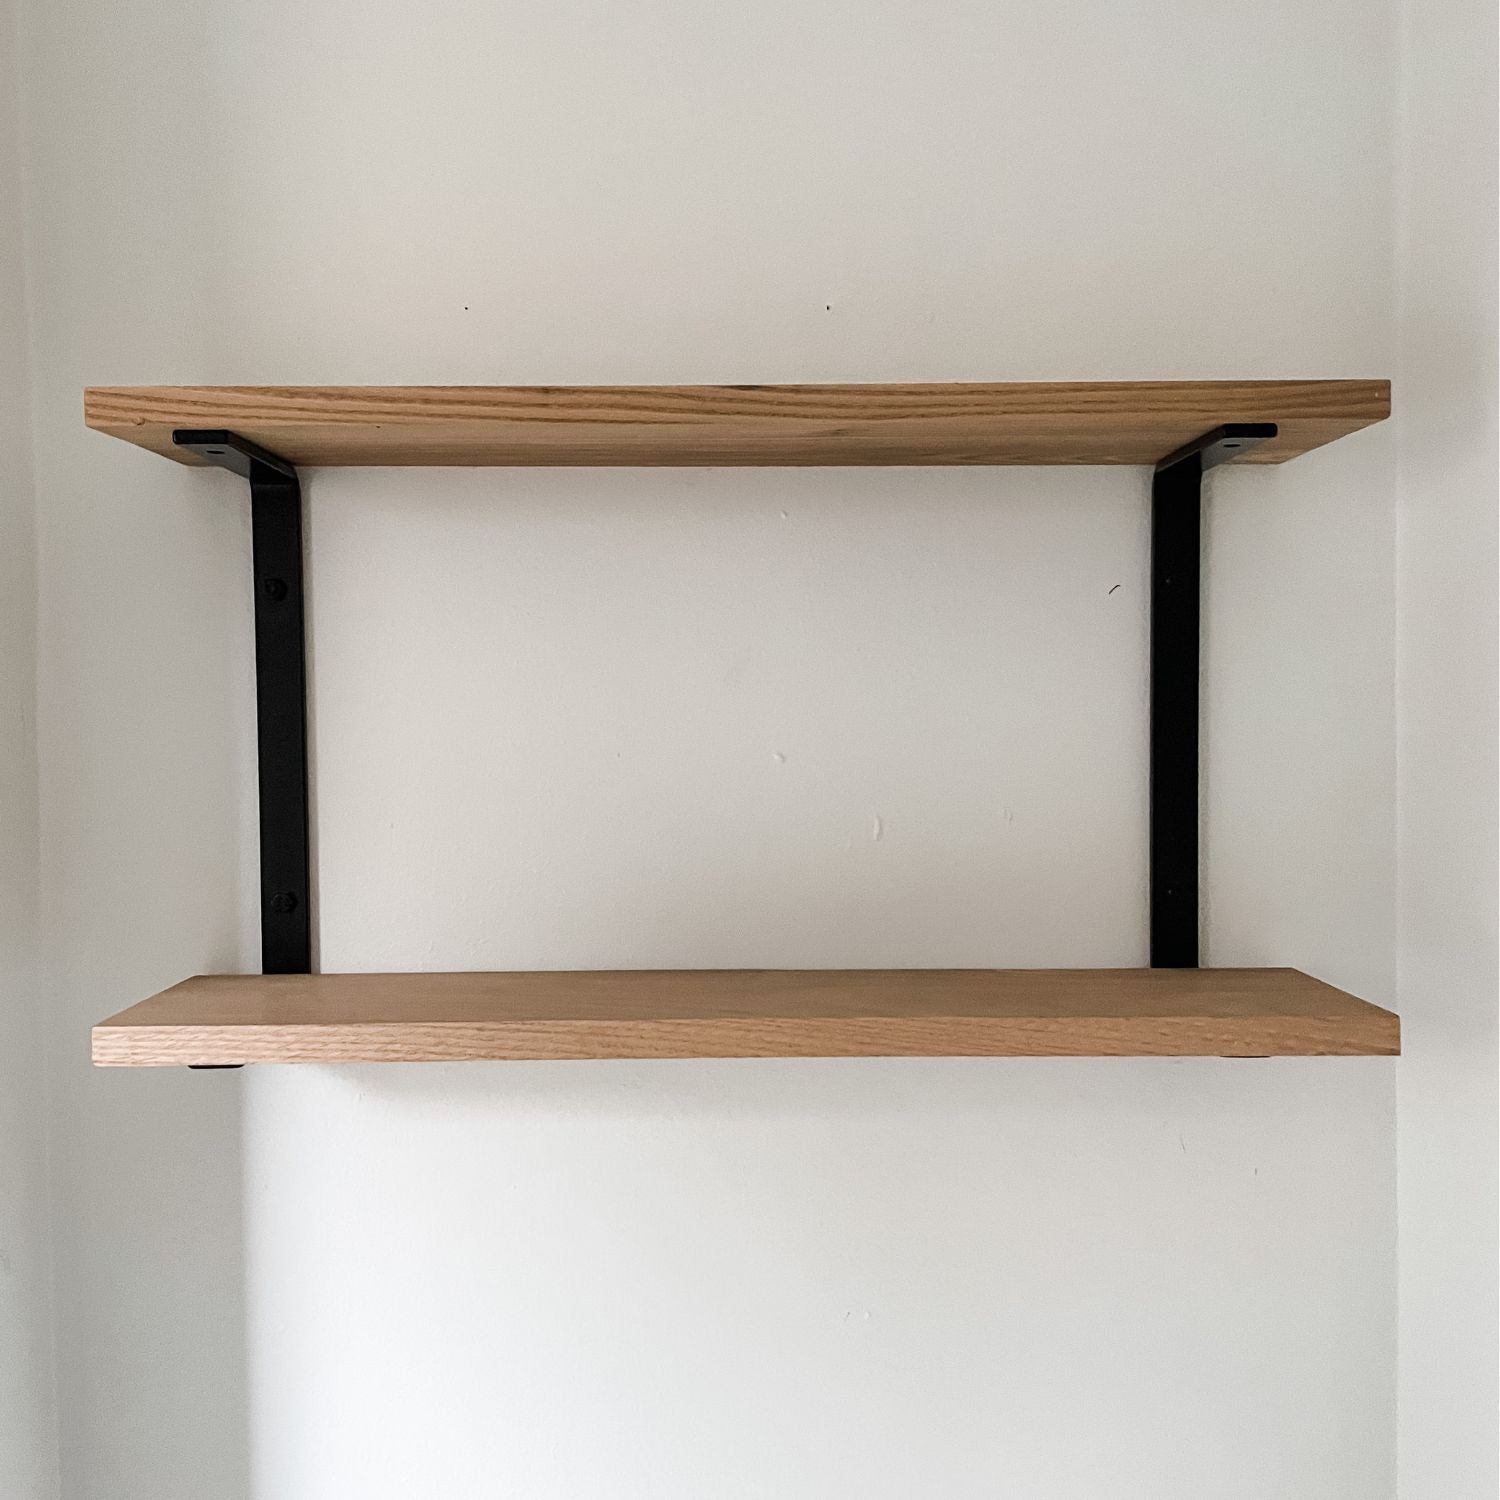 double shelf with black brackets